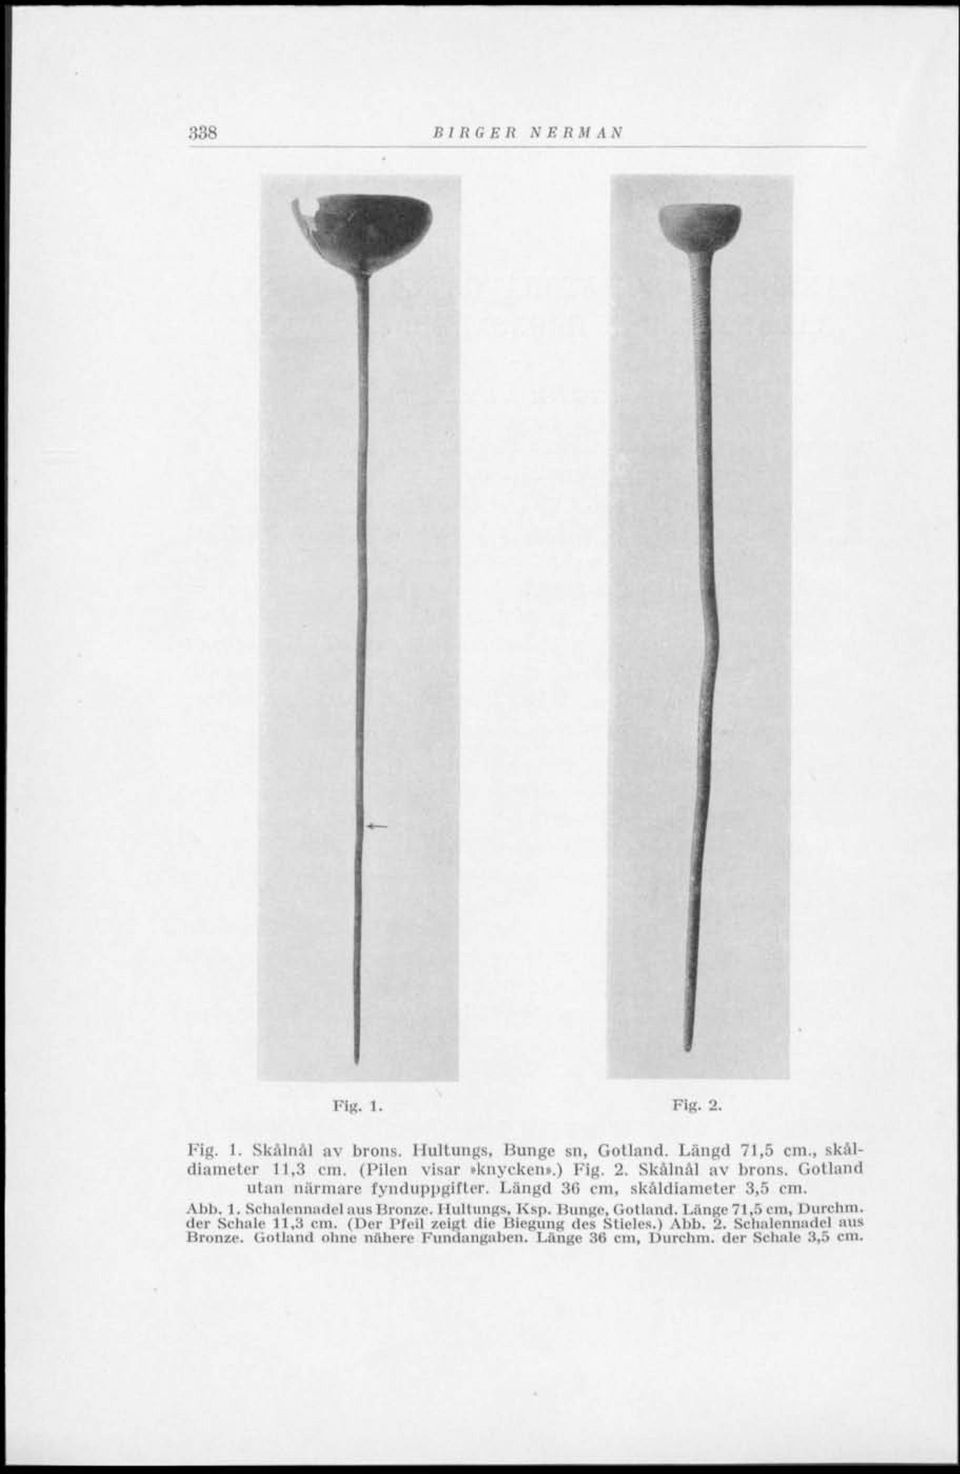 Längd 36 cm, skåldiameter 3,5 cm. Abb. 1. Schalennadel aus Bronze. Hultungs, Ksp. Dunge, Gotland. Länge 71,5 cm, Durchm.